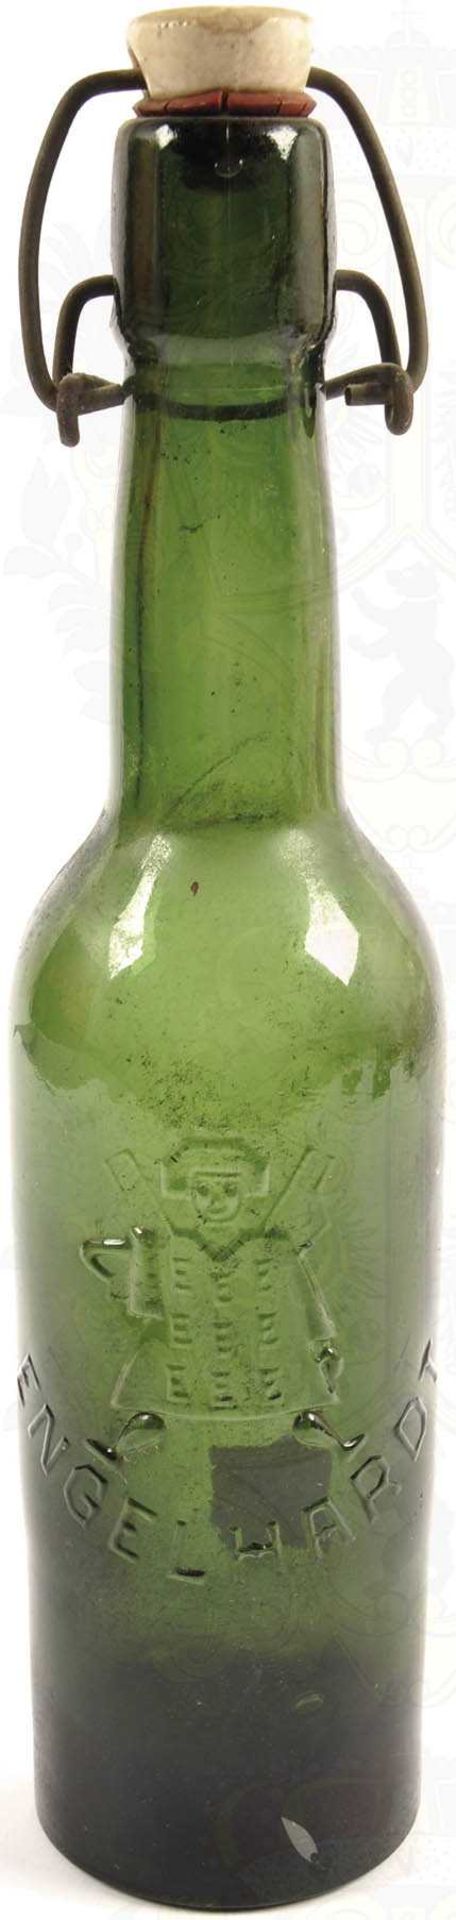 BIERFLASCHE "ENGELHARDT", grünes Glas, plastische Figur u. Schriftzug, ca. 0,4 L., Porzellan-